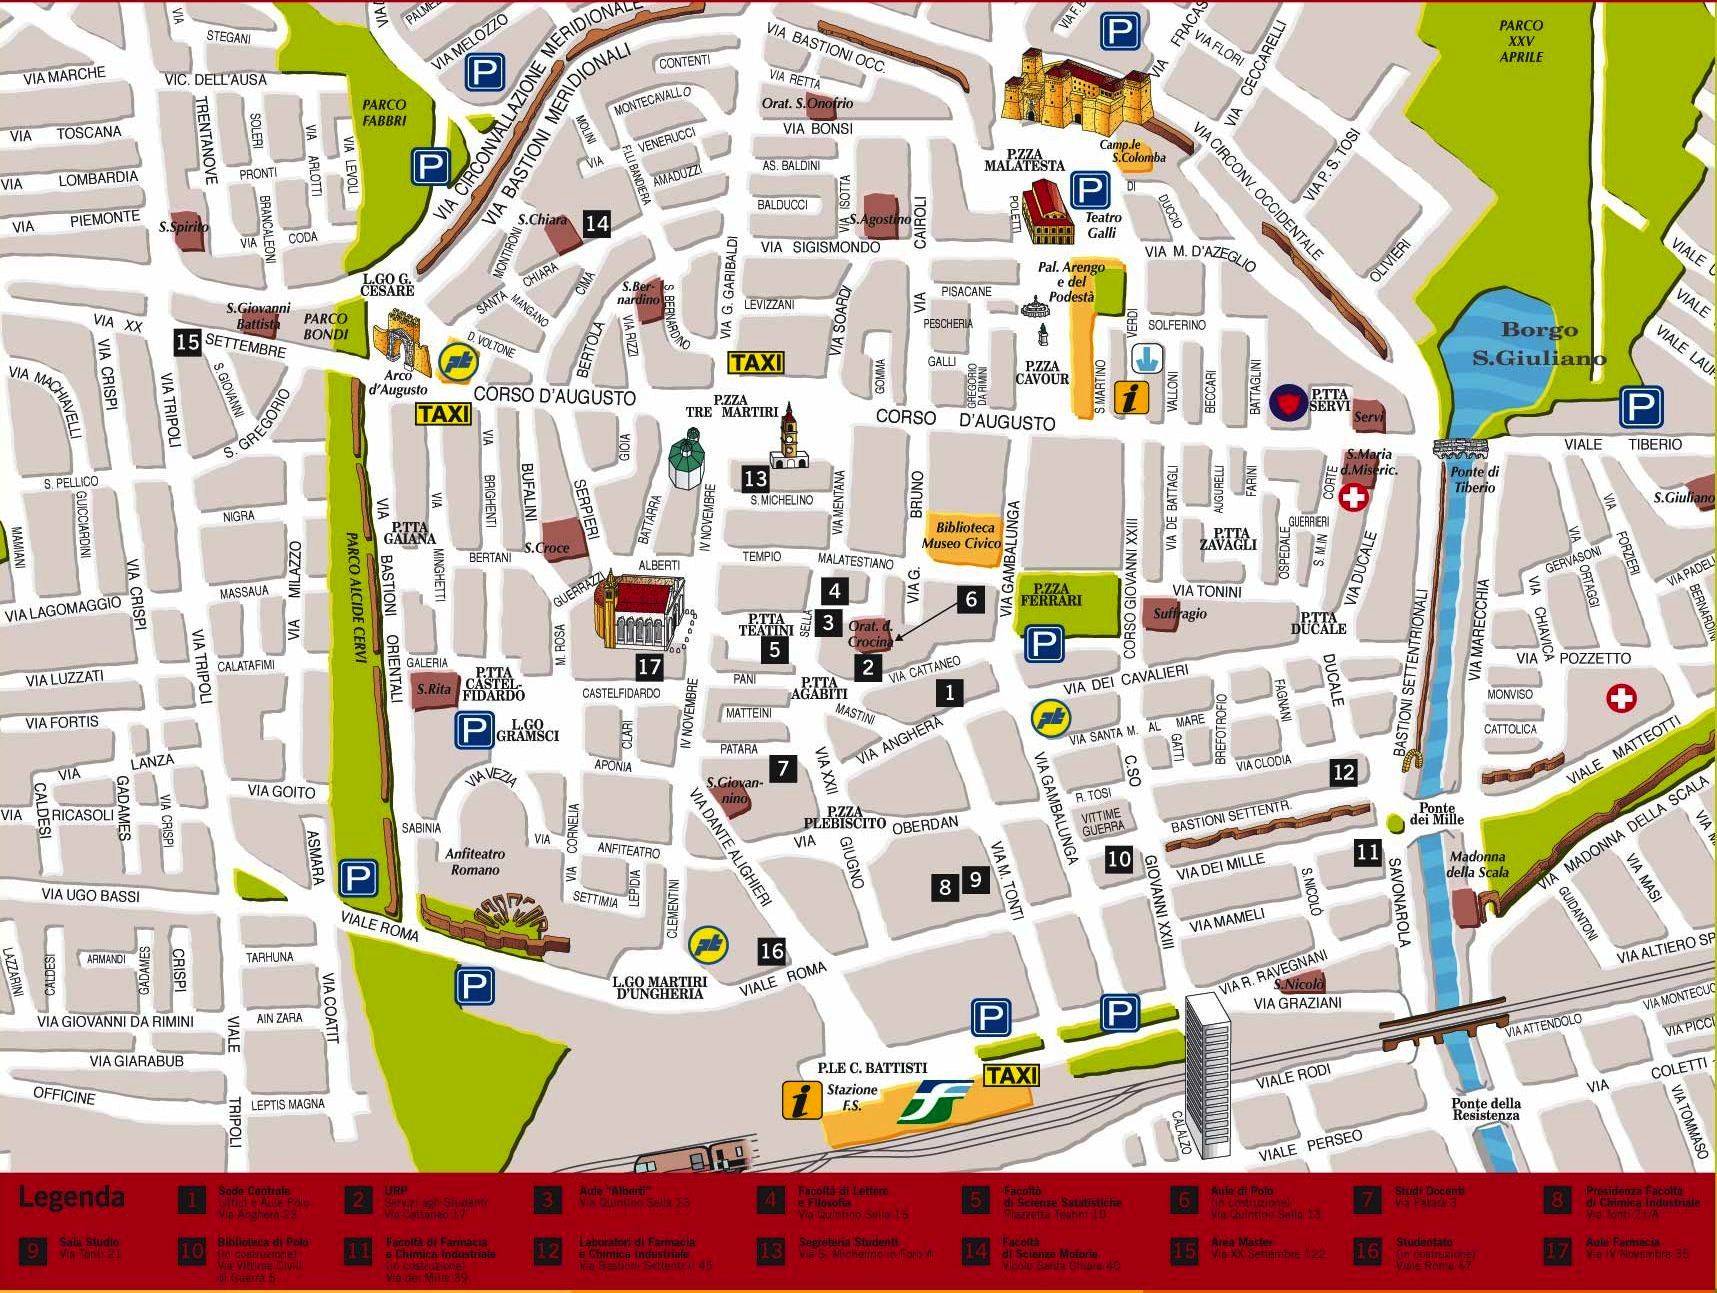 Достопримечательности римини в италии: фото с описанием, карта города